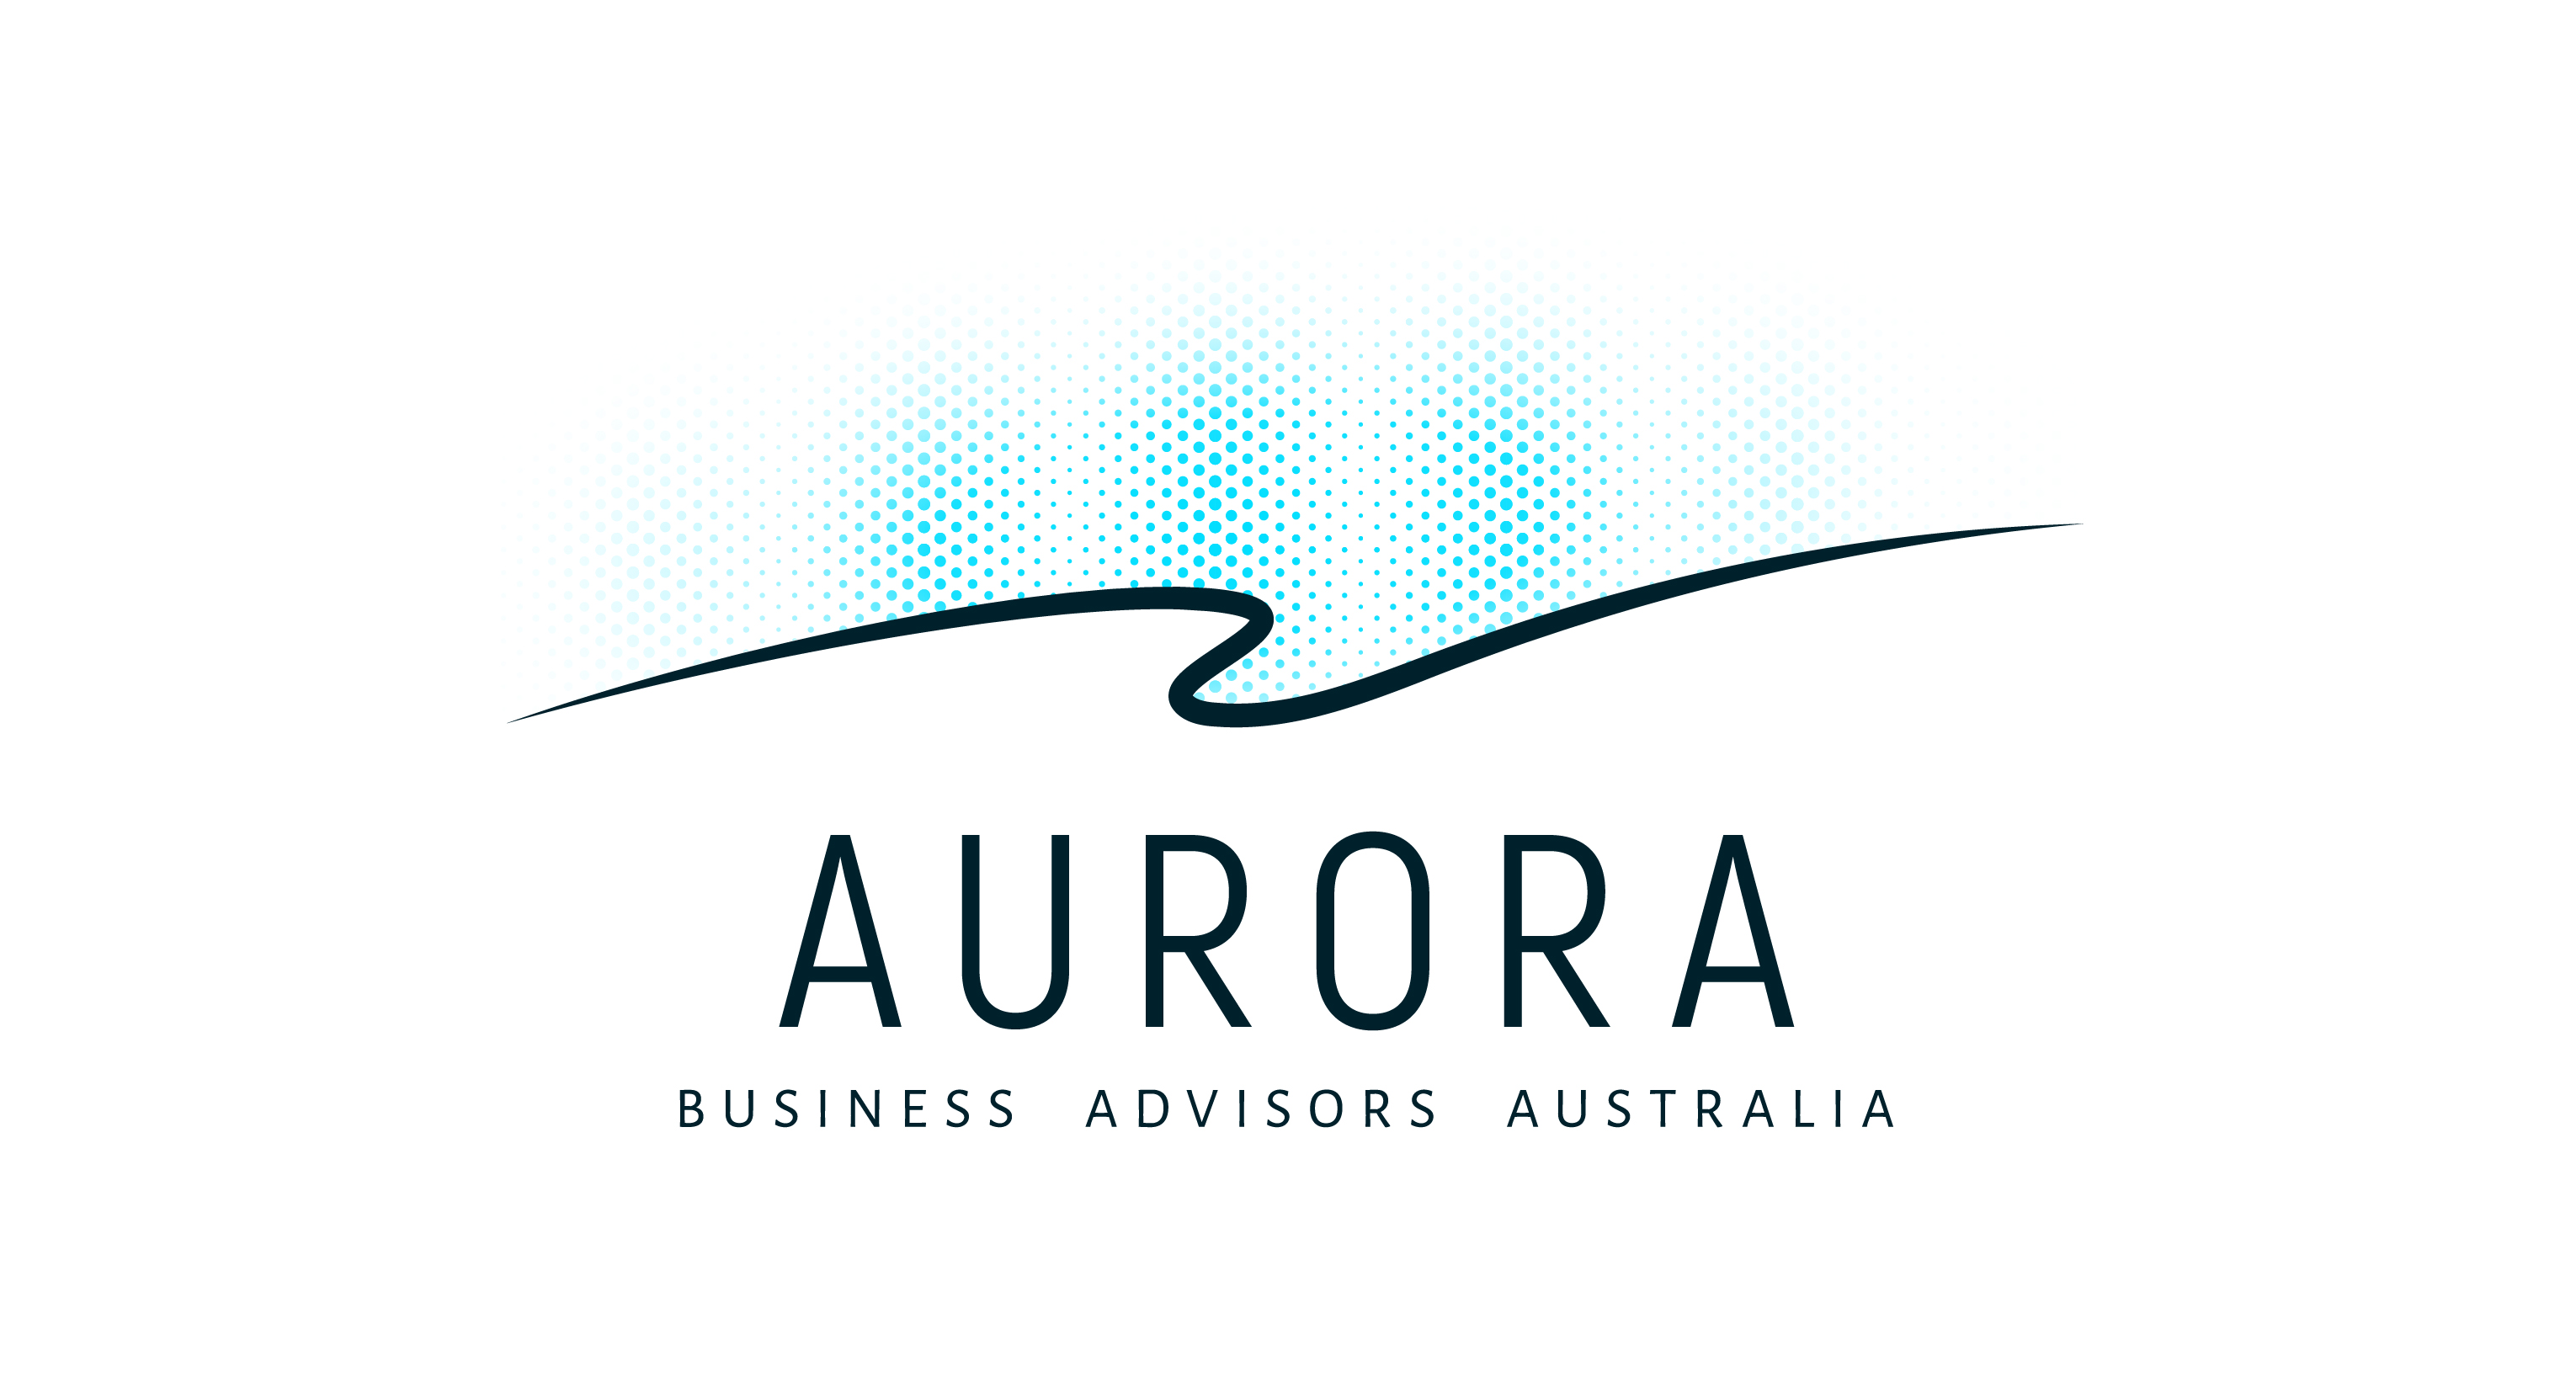 Aurora Business Advisors Australia Logo